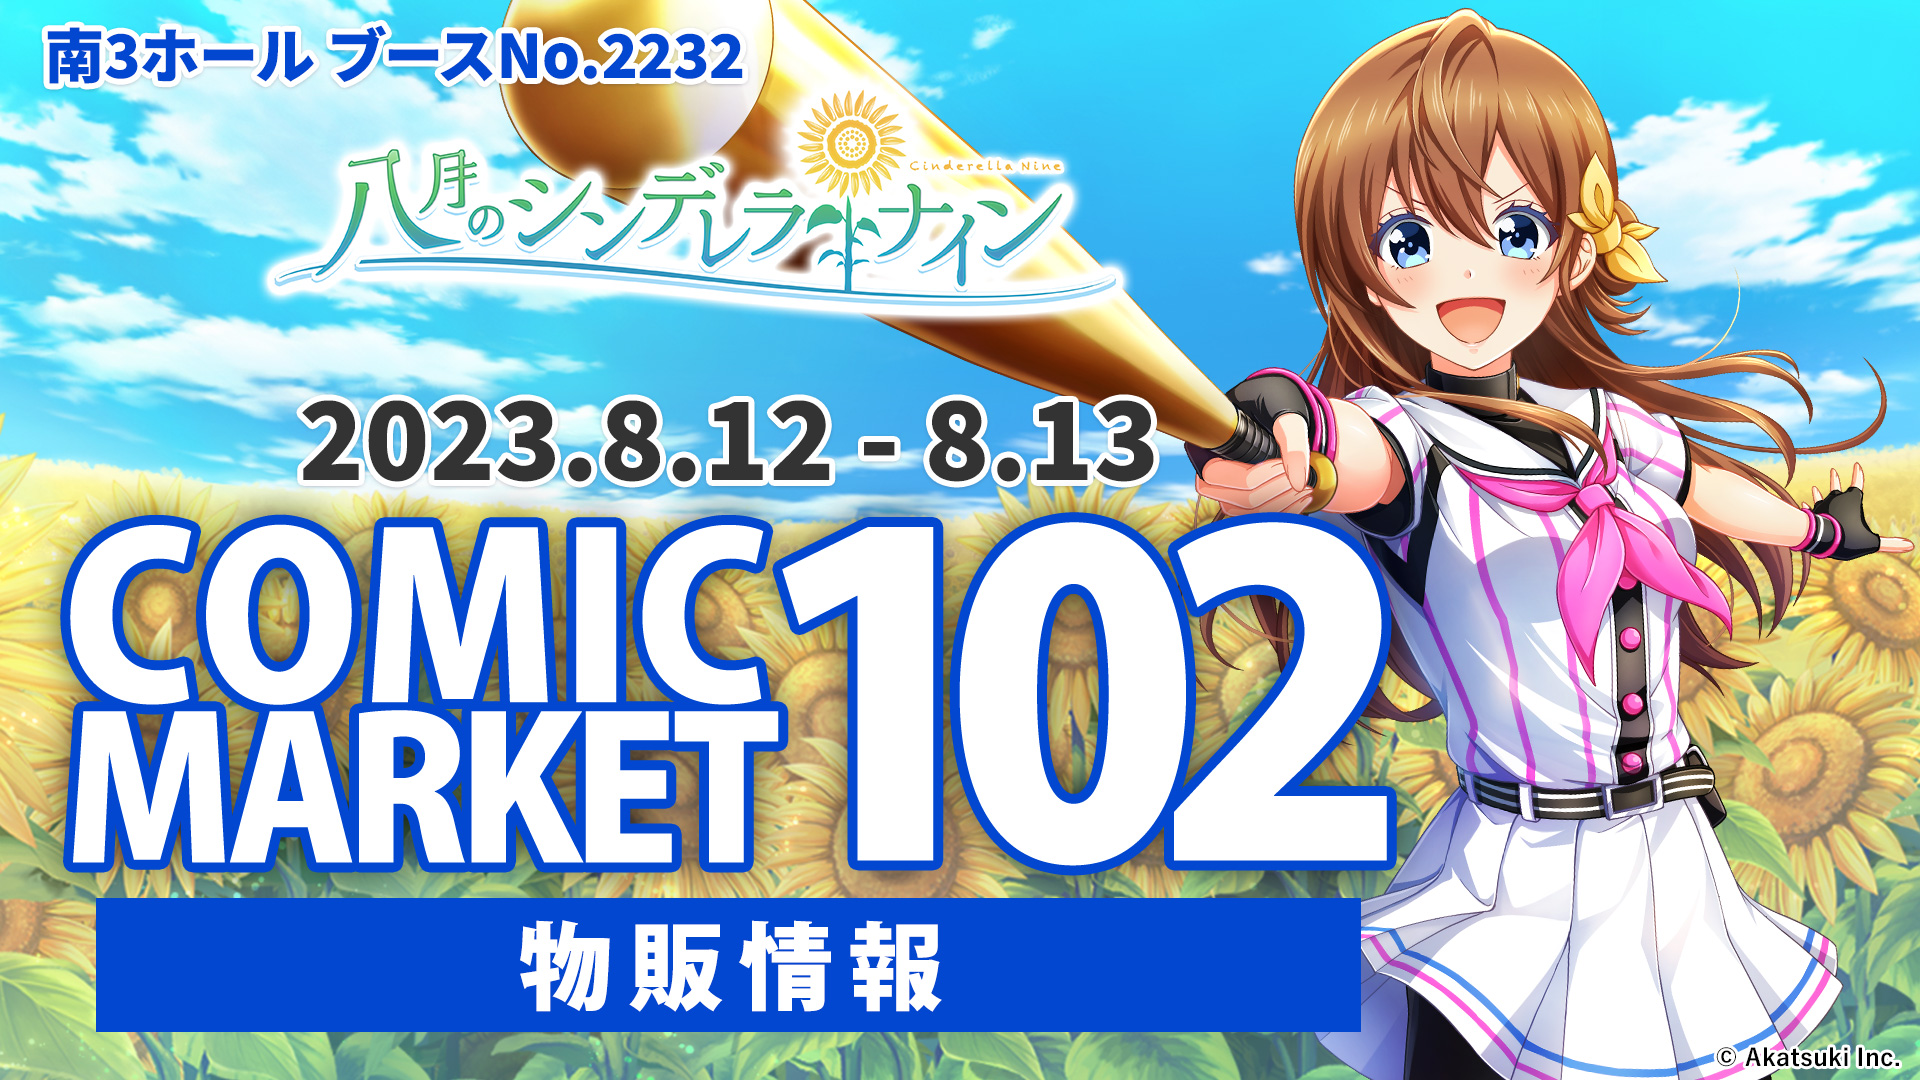 コミックマーケット102 【物販情報】 | 八月のシンデレラナイン ...